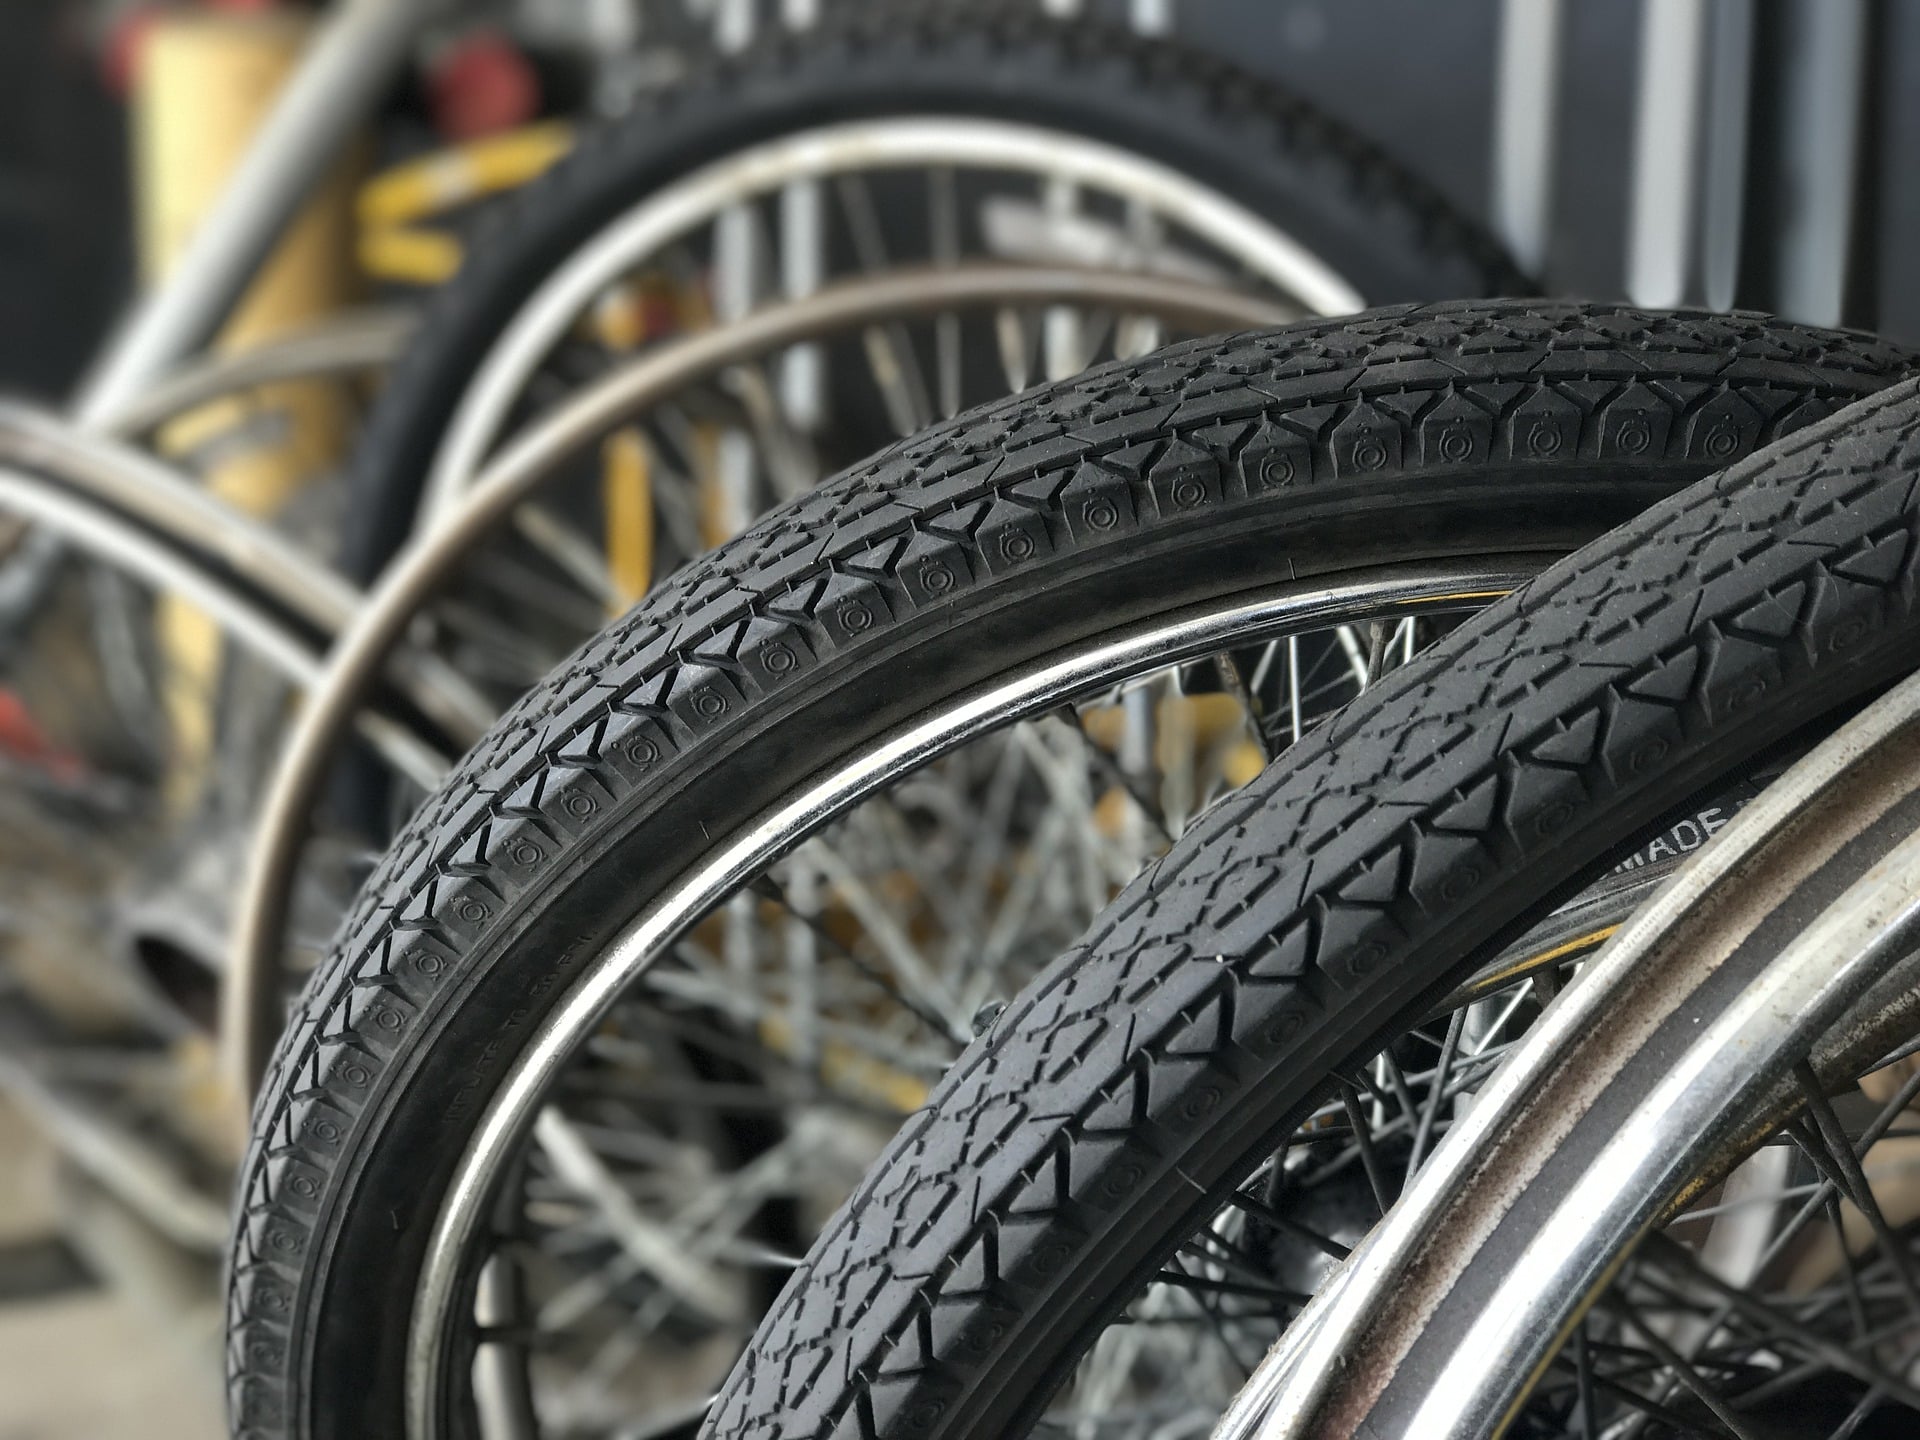 MTB Fahrrad Kettenspanner Einsteller Aluminium Fahrrad Pflege Faltbar Befestiger